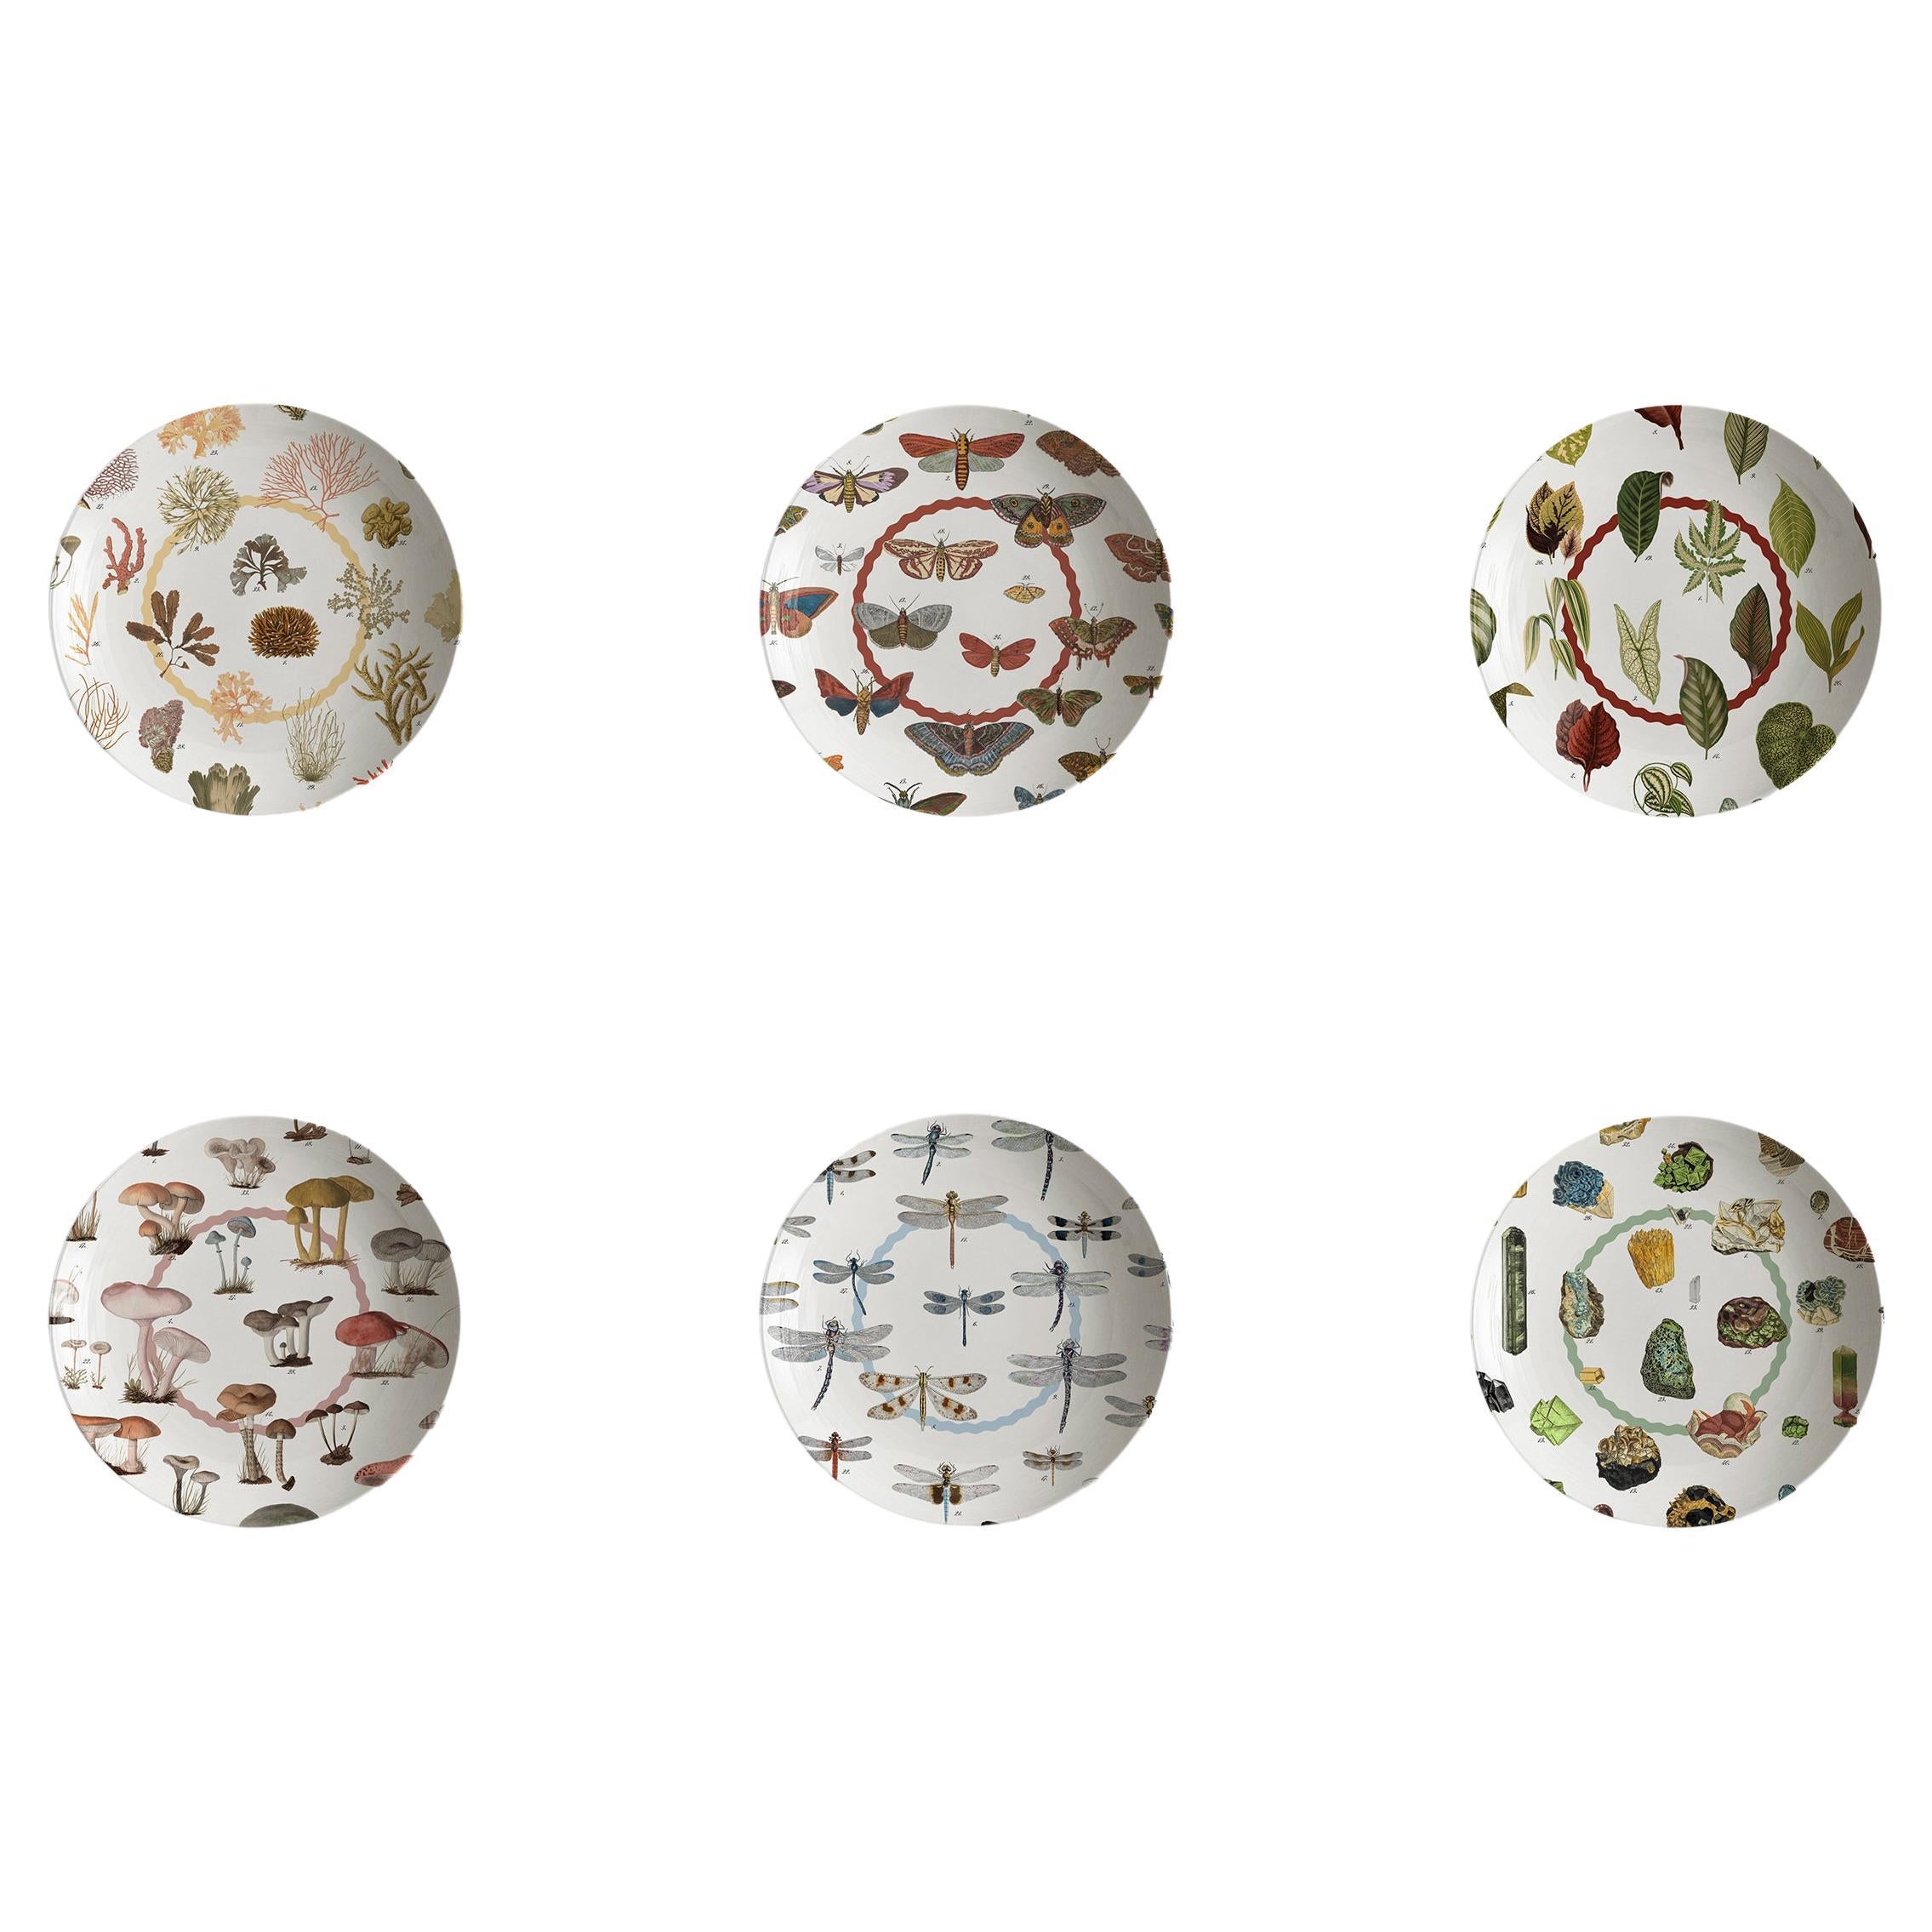 Cabinet de Curiosités, Six Contemporary Decorated Porcelain Soup Plates